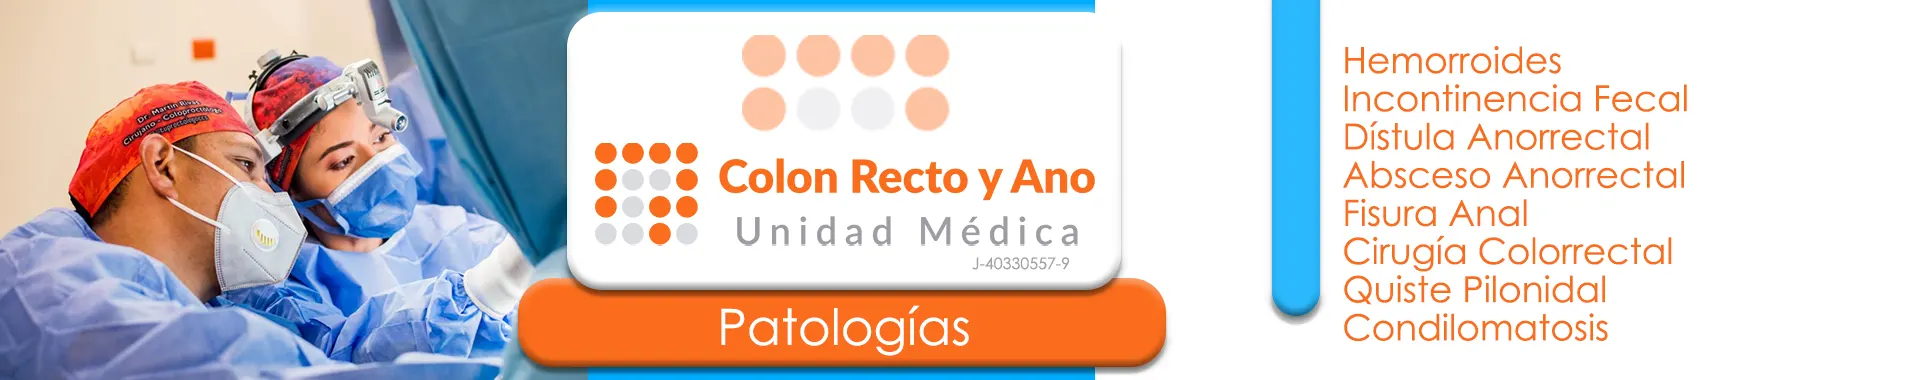 Imagen 5 del perfil de Colon Recto y Ano Unidad Médica